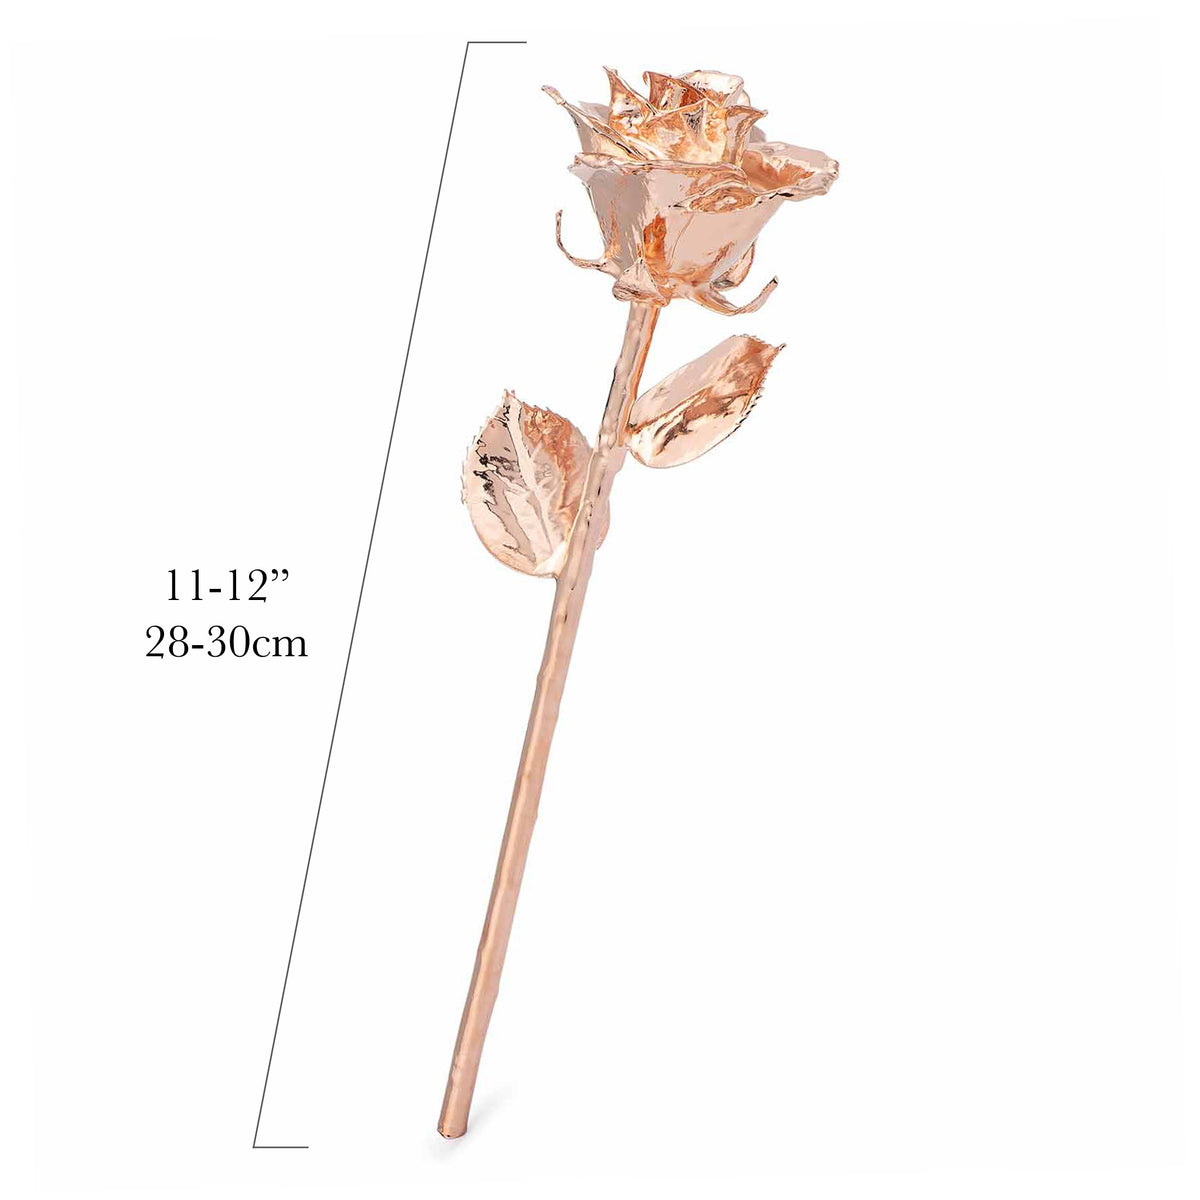 Forever Rose Bloom Box &amp; Phantom Vase™ Combo (Rose Gold)